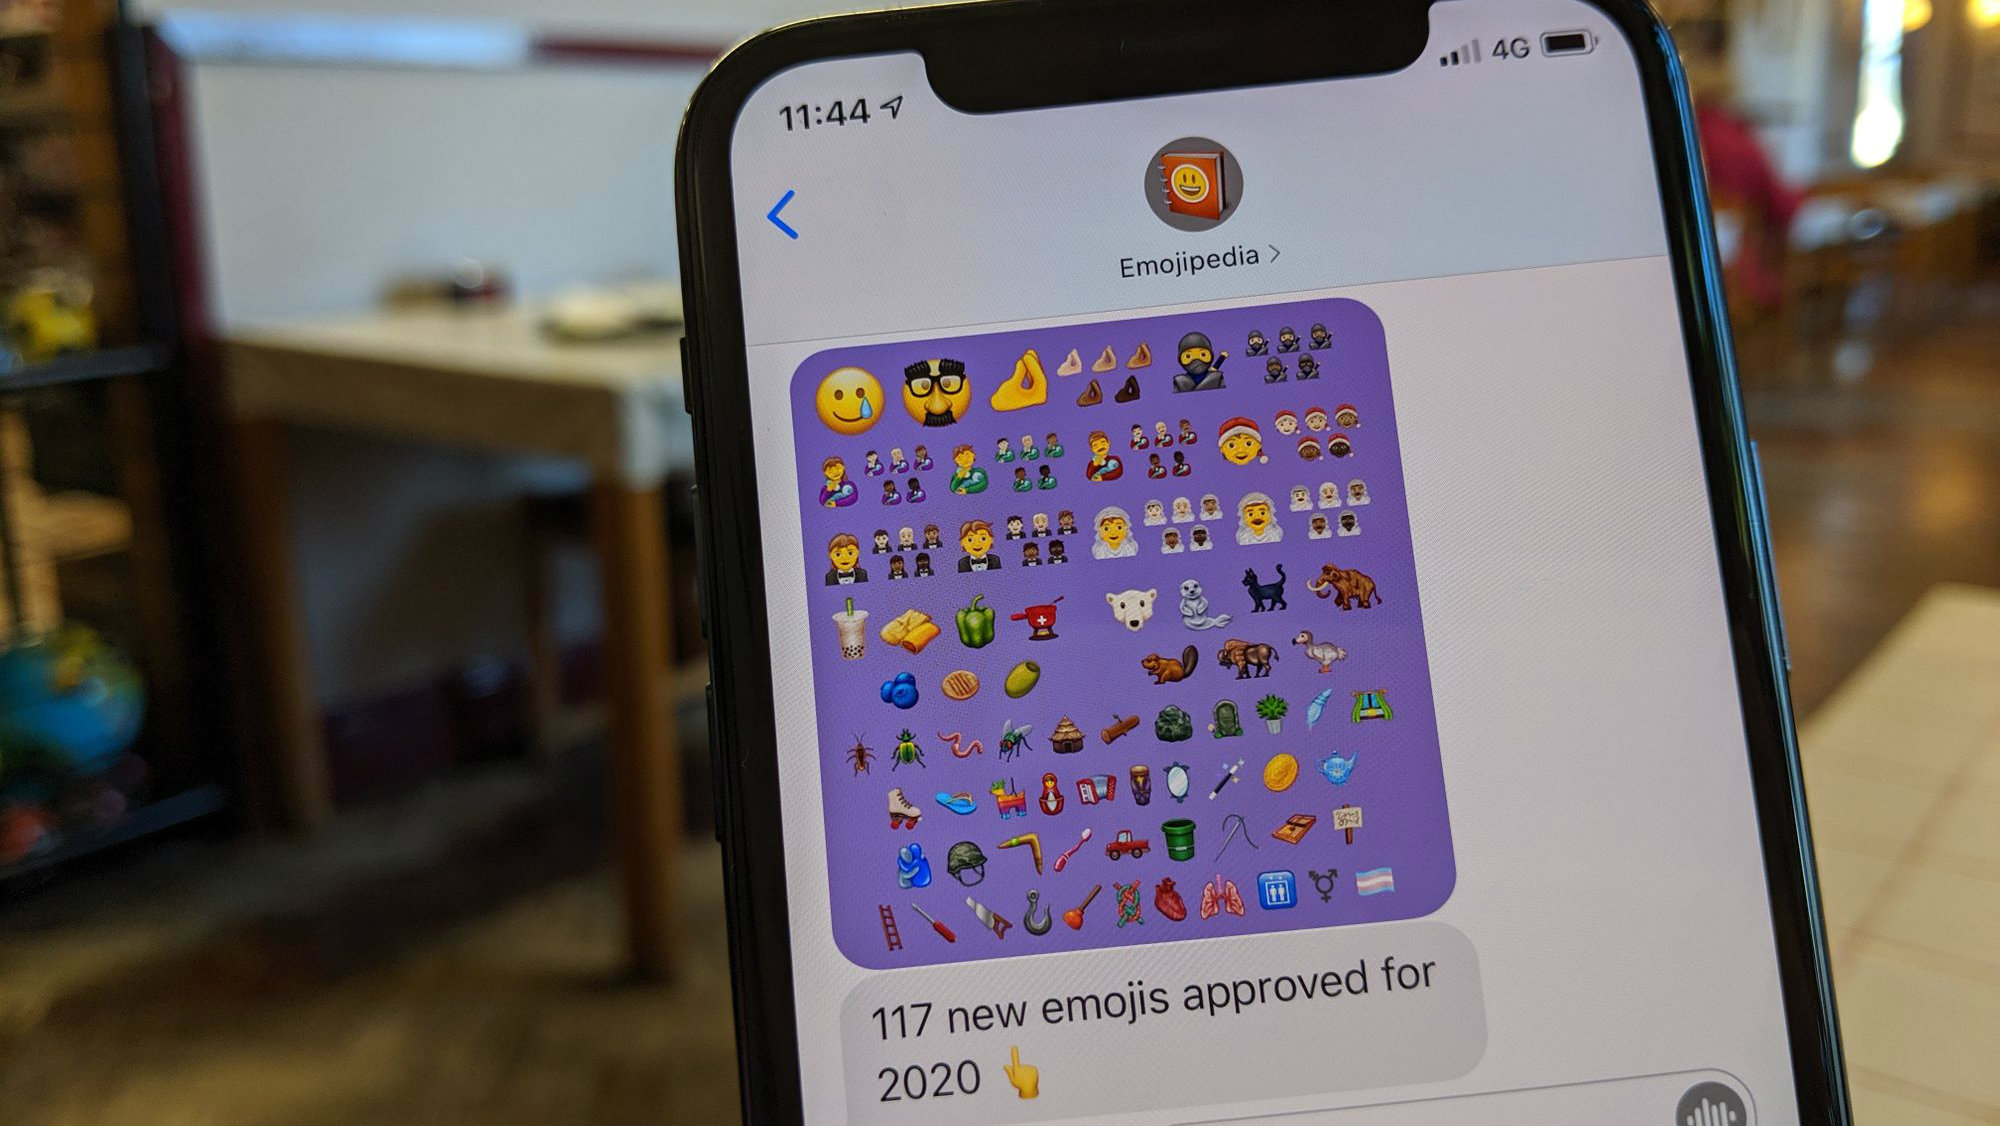 2020’de 117 yeni emoji geliyor!